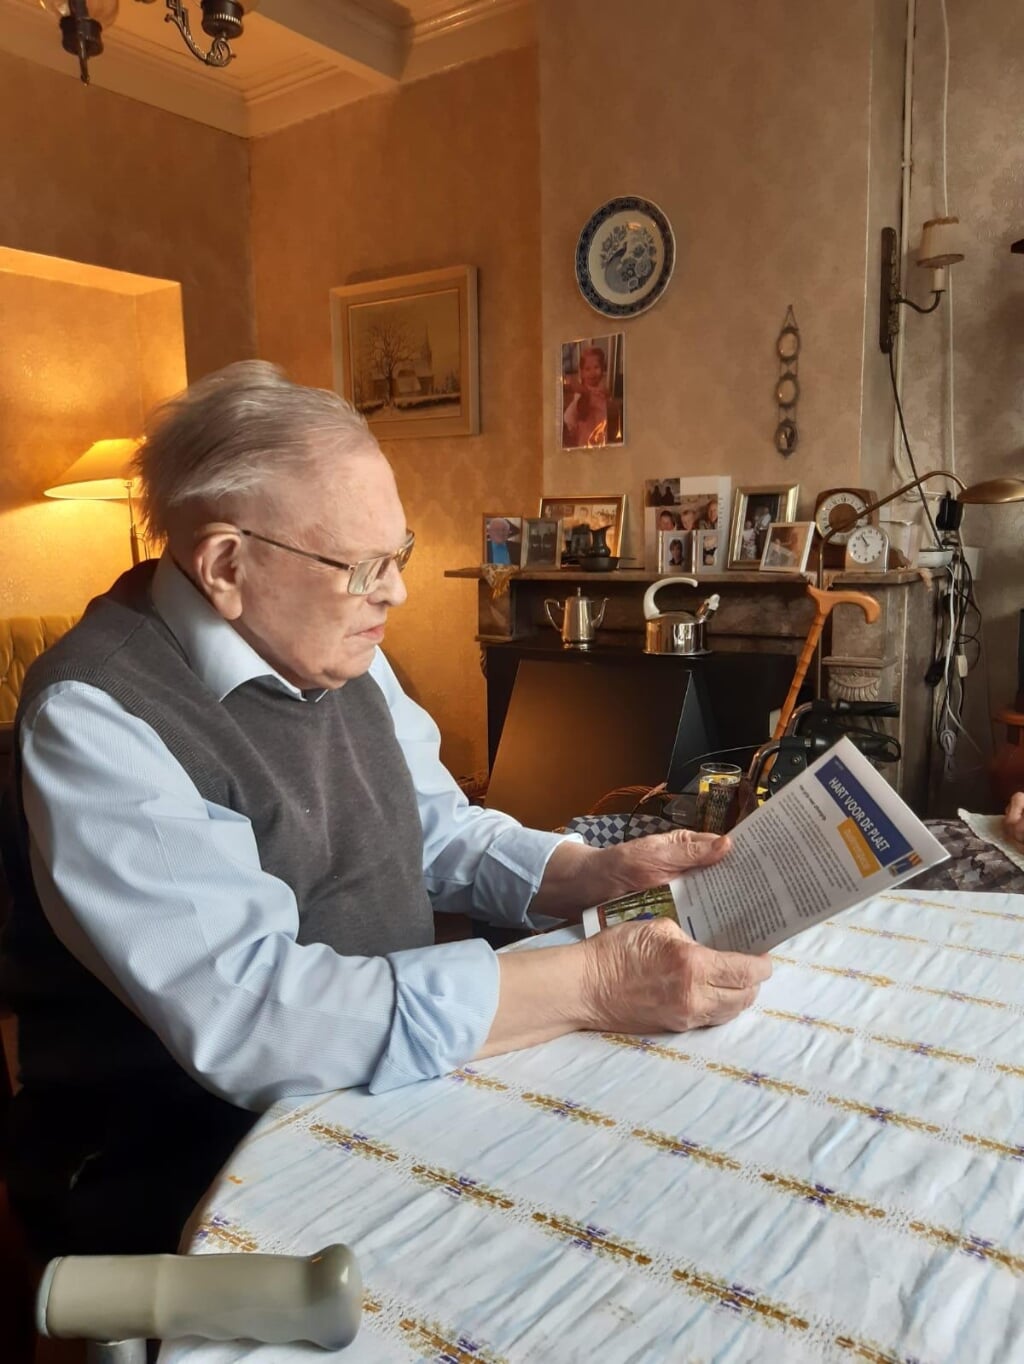 De 102-jarig Piet in 't Veld bekijkt de speciale editie 'Hart voor de Plaet'.